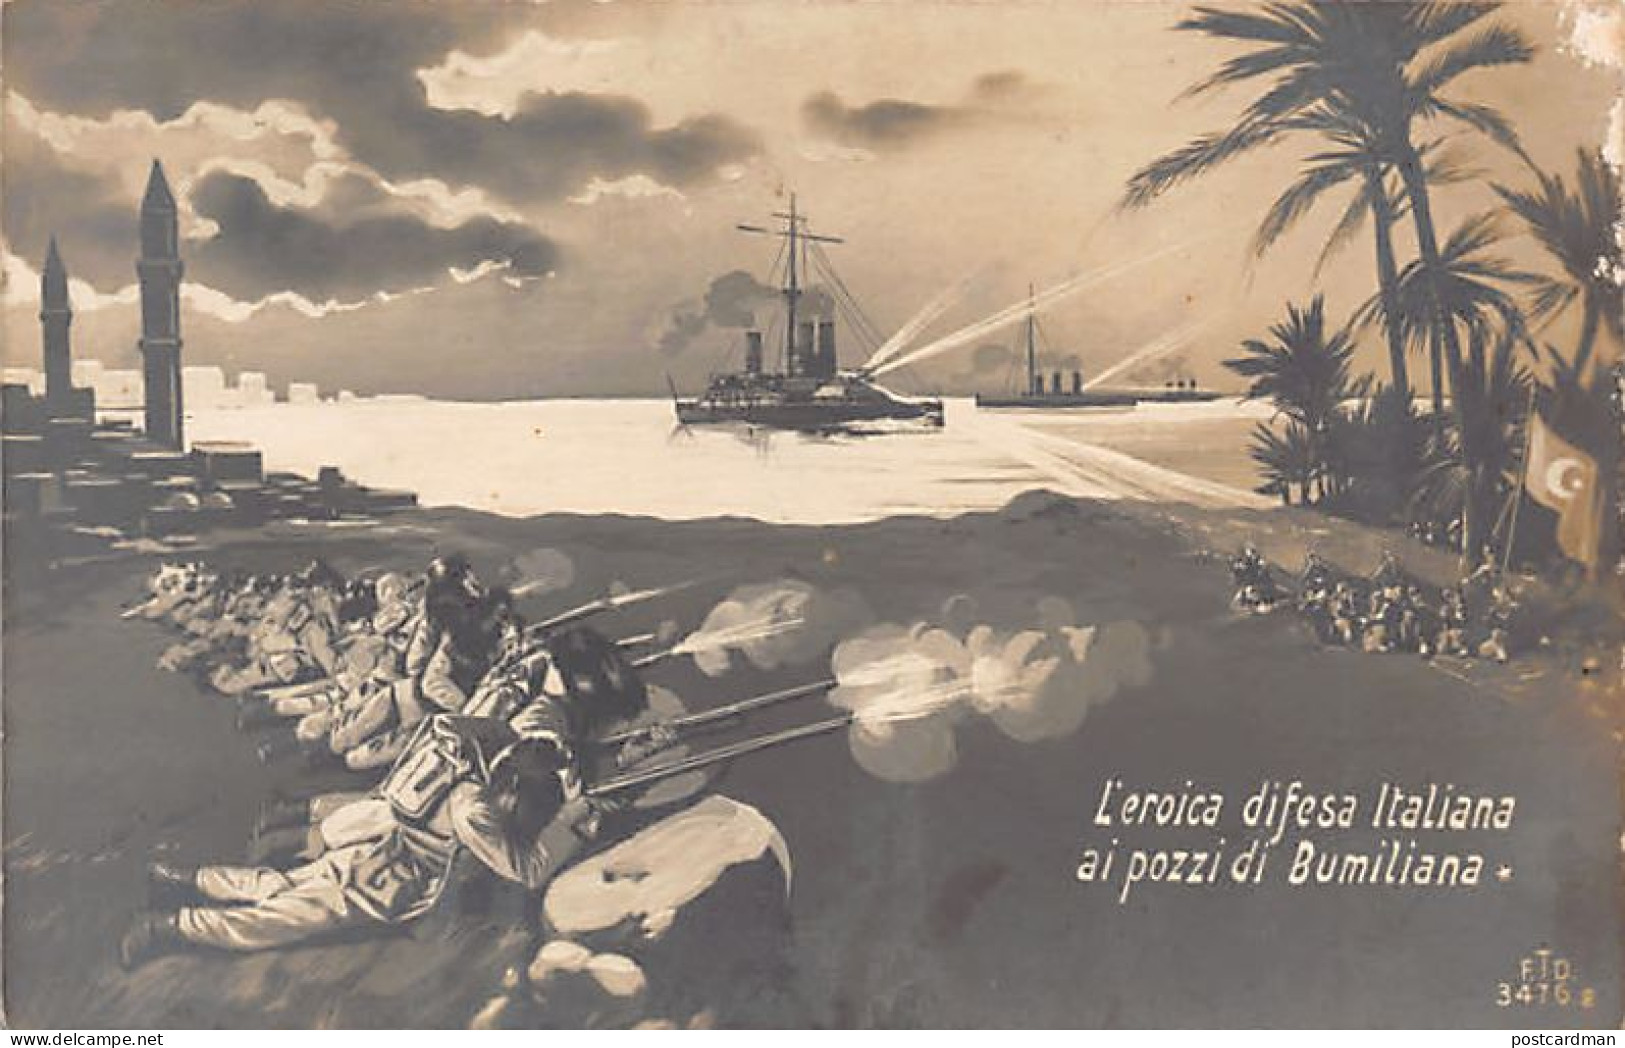 Libya - Italo-Turkish War - The Heroic Italian Defense Of The Bumiliana Well - Libya